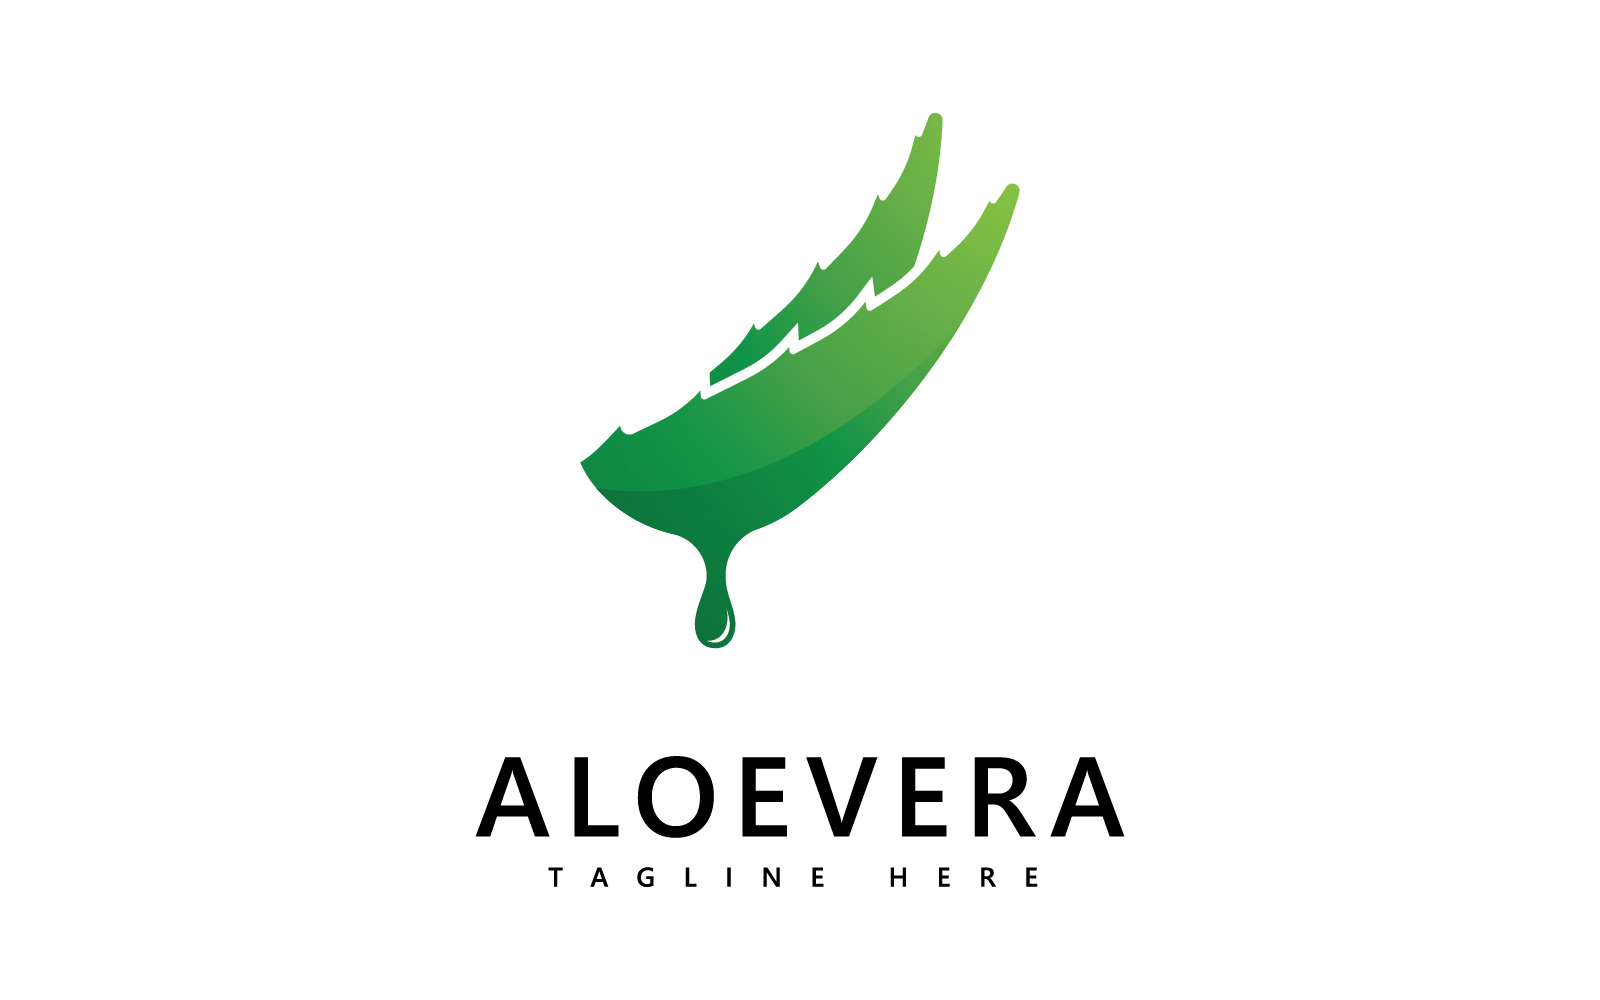 Aloe vera plant logo drop vector design. Aloe vera gel logo icon V3